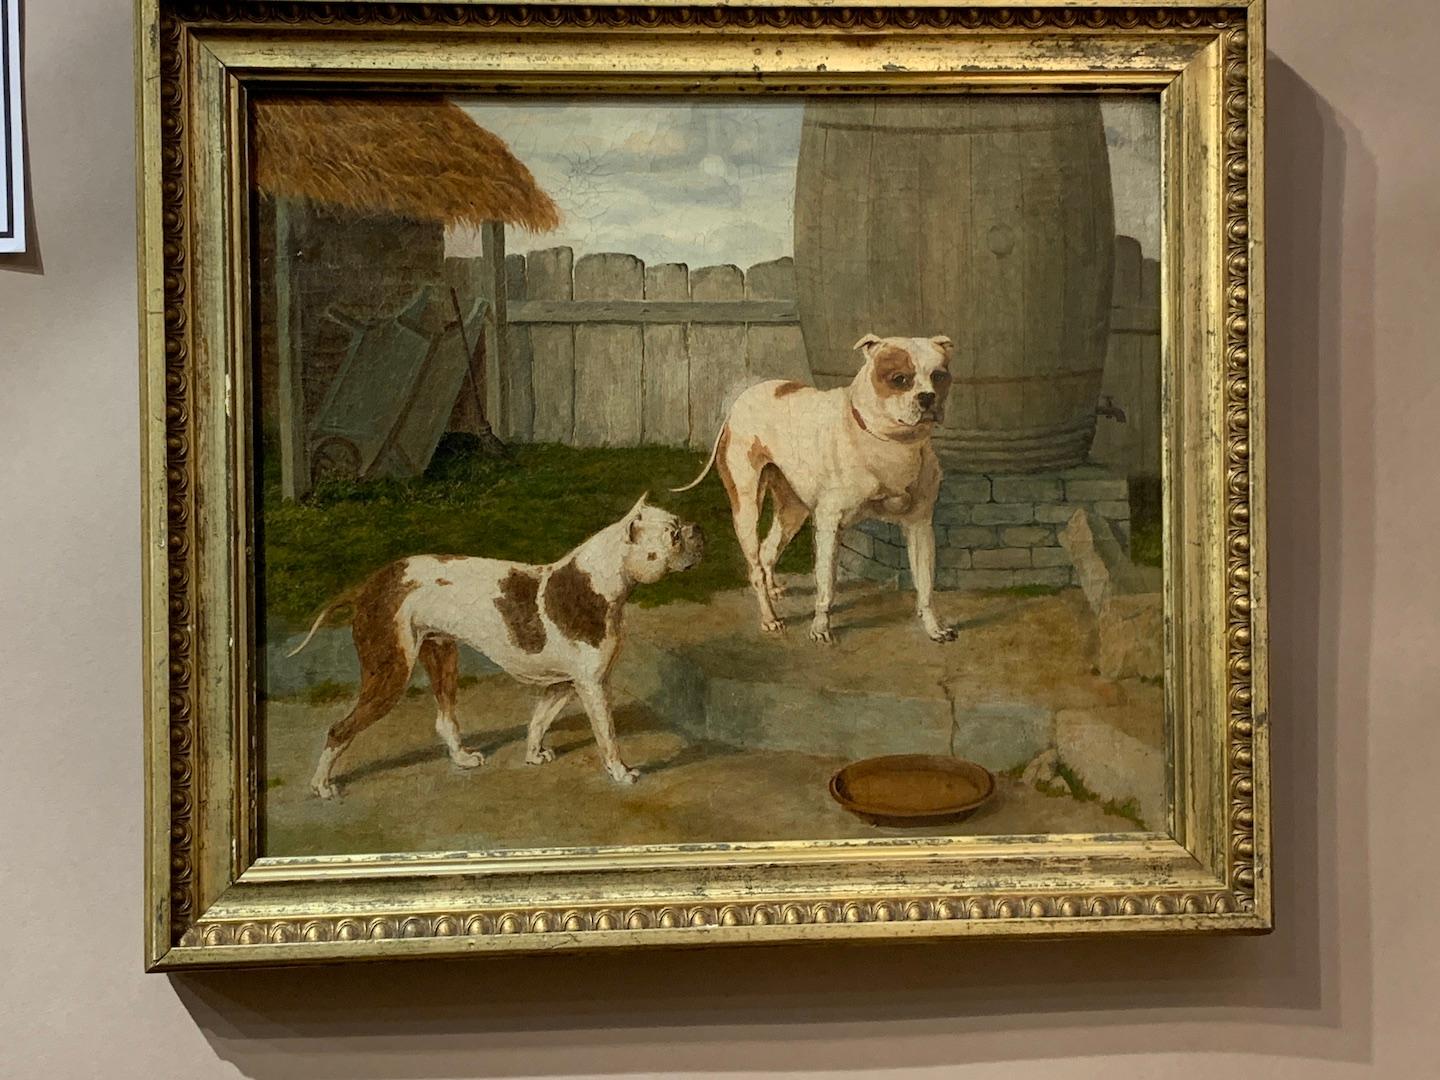 Portrait anglais ancien du 19me sicle reprsentant deux chiens de taureau dans un jardin. - Painting de John Frederick Herring Sr.